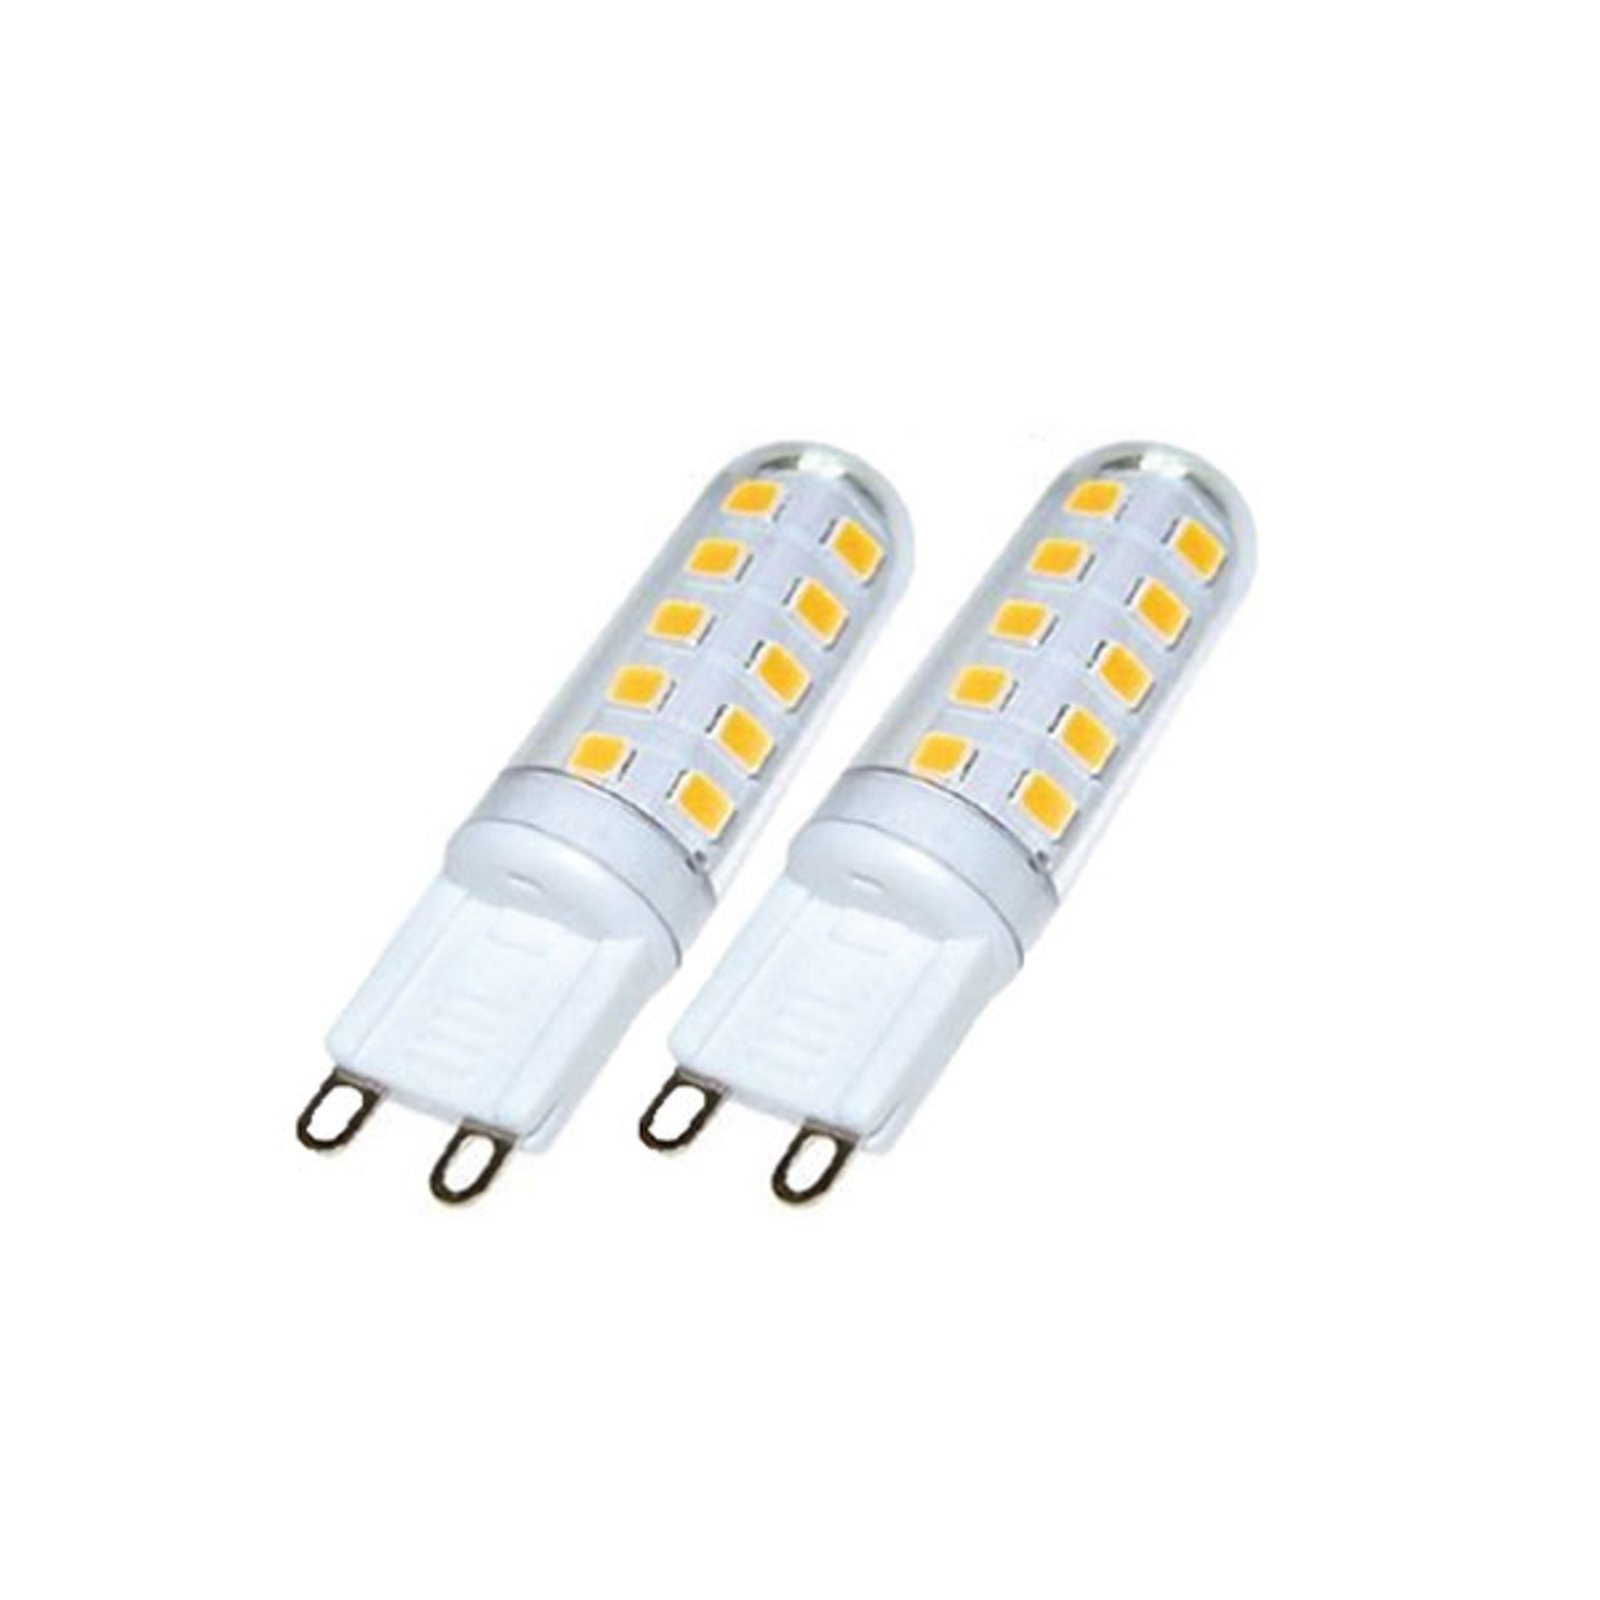 Lâmpada LED com casquilho G9 3W, 3.000 K, regulável externamente, conjunto